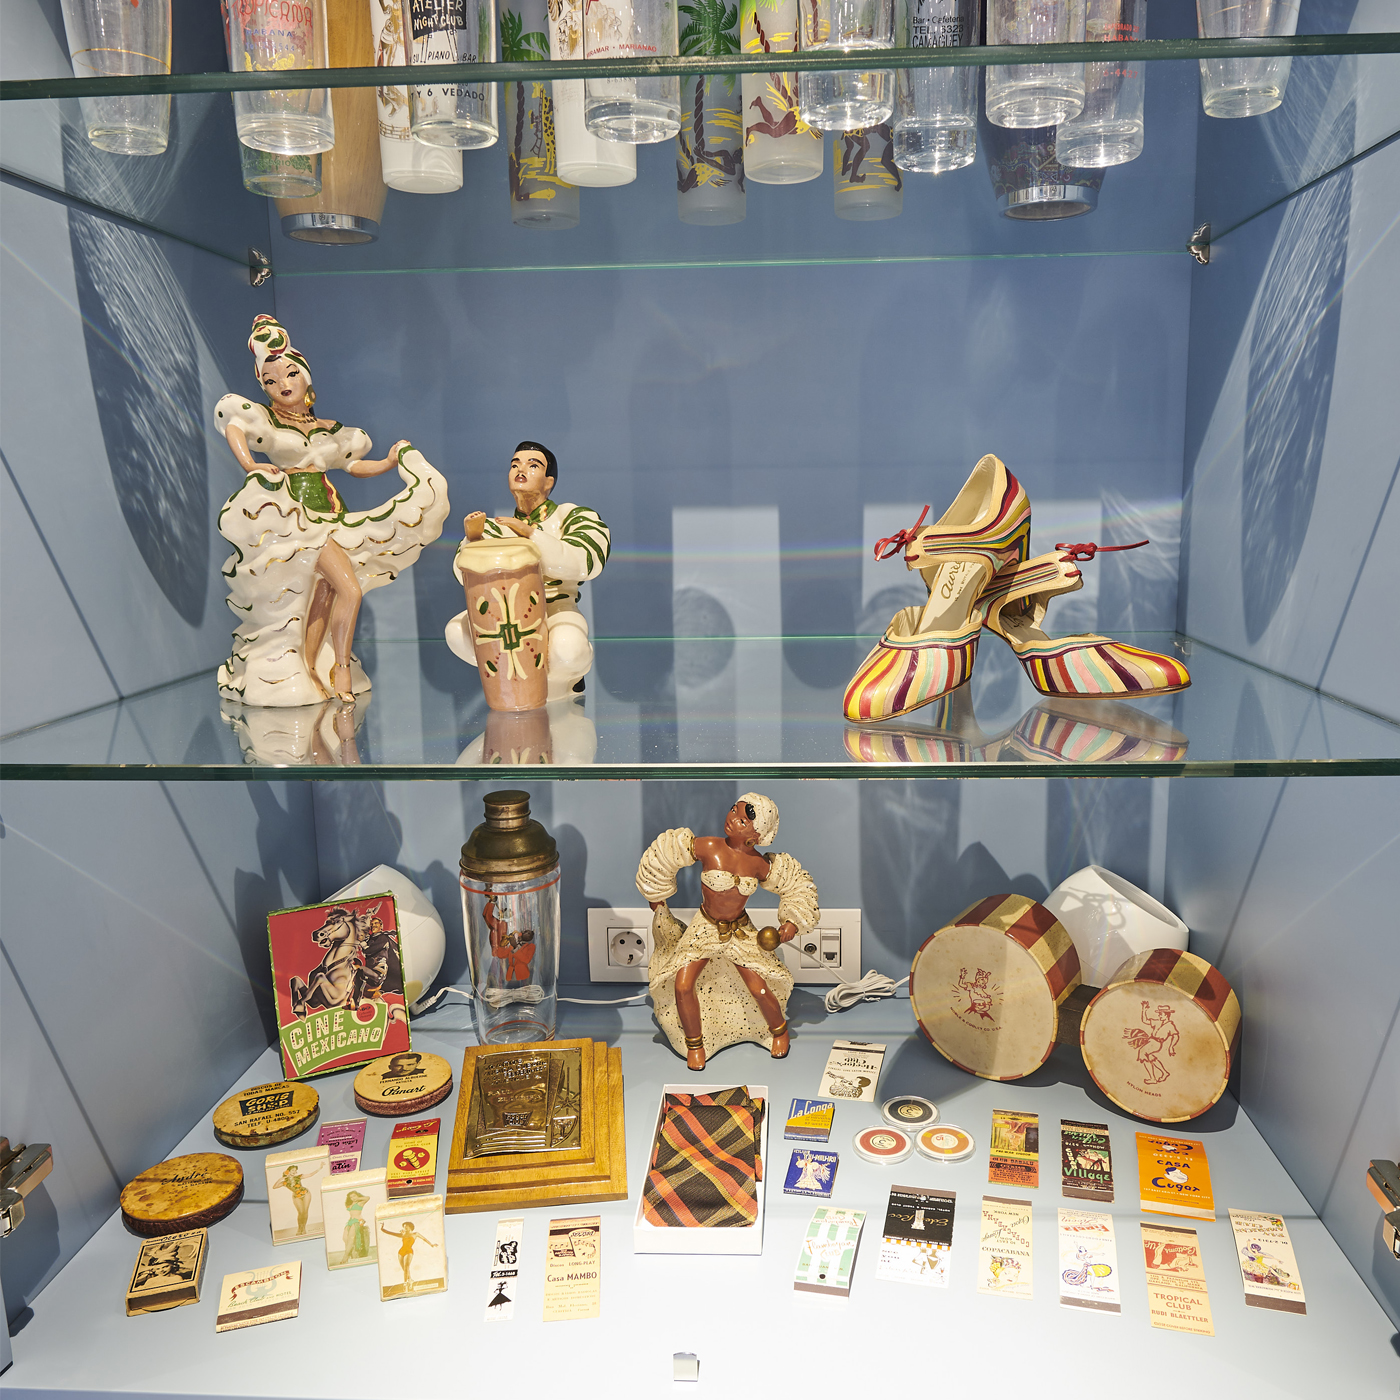 Gladys Palmera Collection on March 8, 2022 in San Lorentzo de El Escorial, Spain